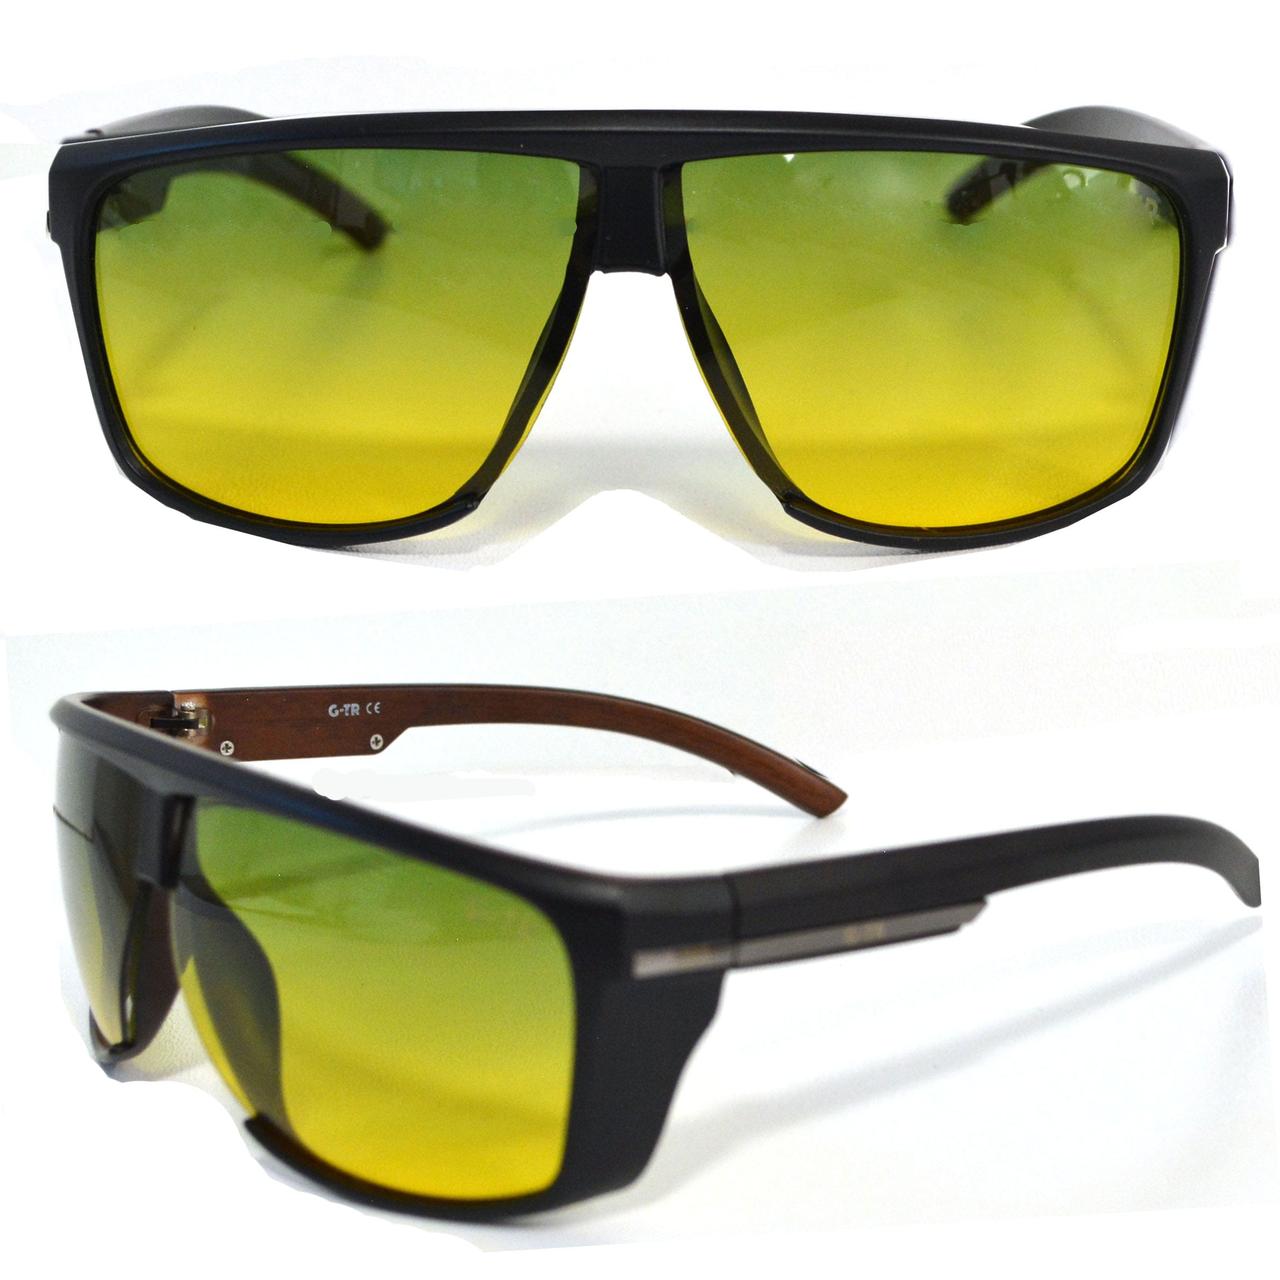 Солнцезащитные поляризационные очки ПОЛАРОИД для водителей черные оправы зеленые стекла G TR PX 9801 A, фото 1